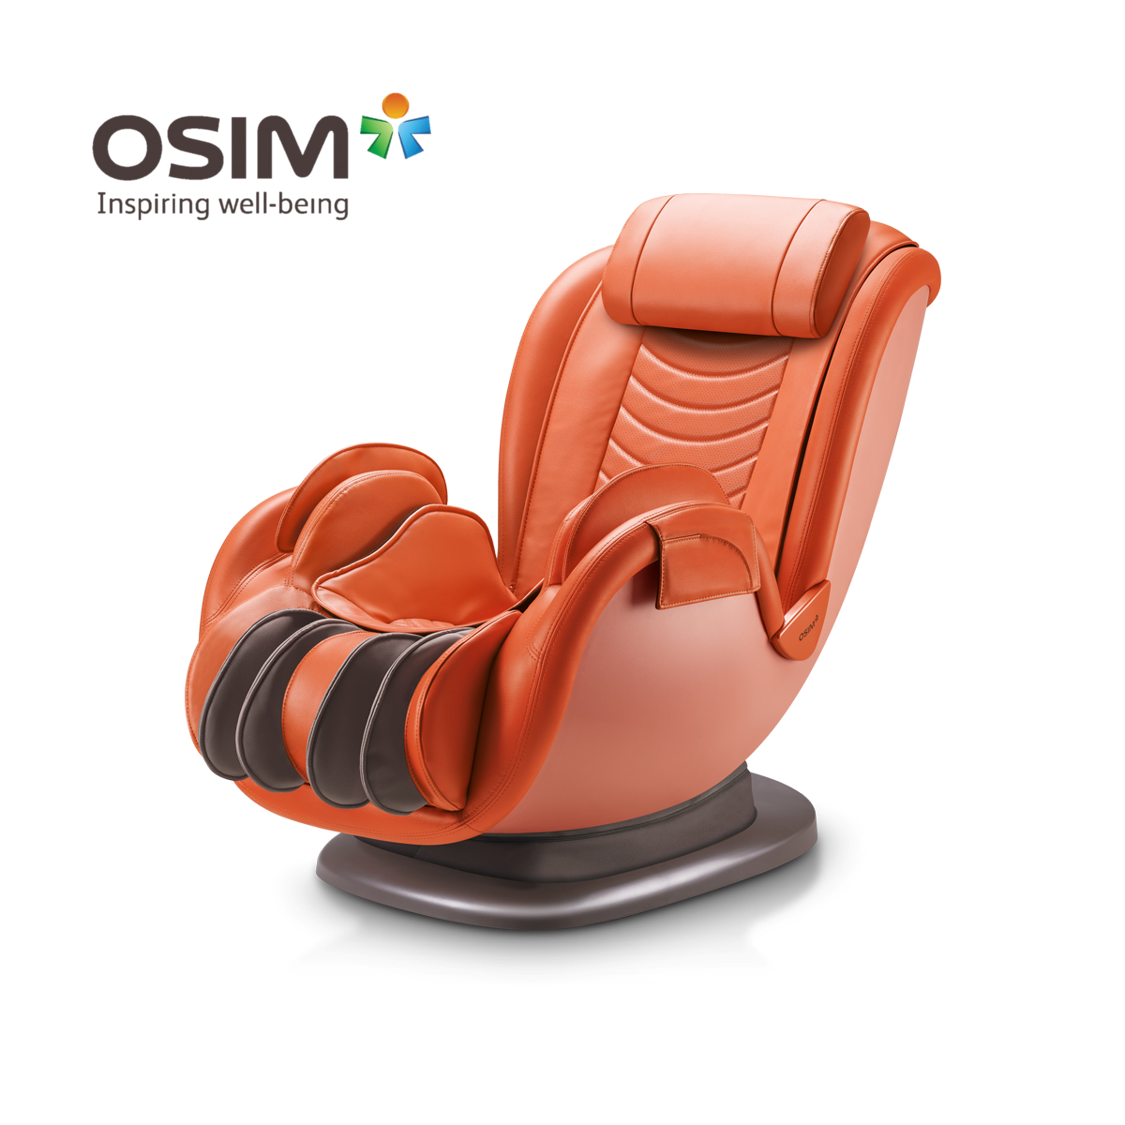 OSIM uDivine Mini 2 (Orange) Massage Sofa